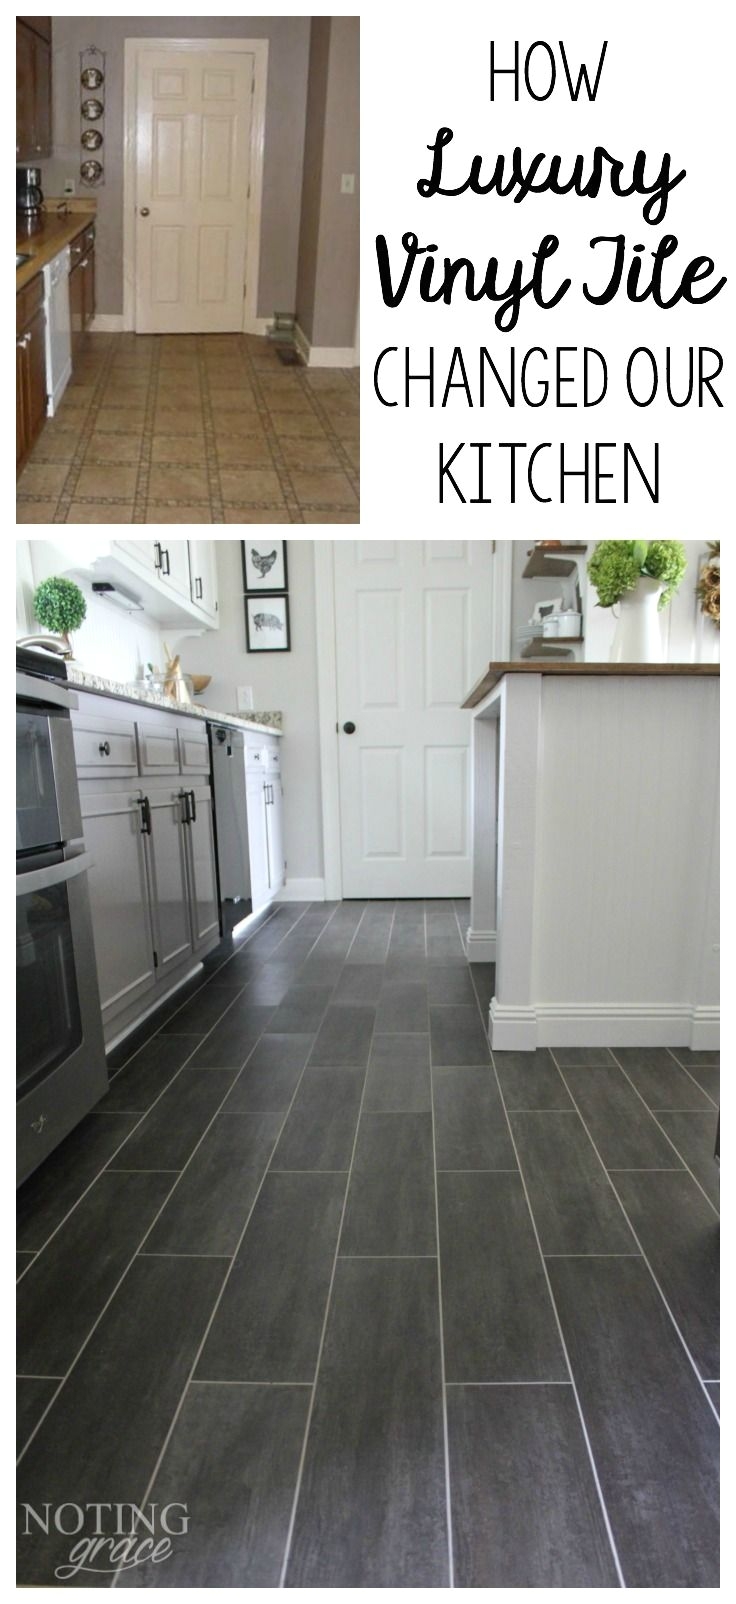 Durable Flooring for Mobile Homes Diy Kitchen Flooring Pinterest Luxury Vinyl Tile Vinyl Tiles